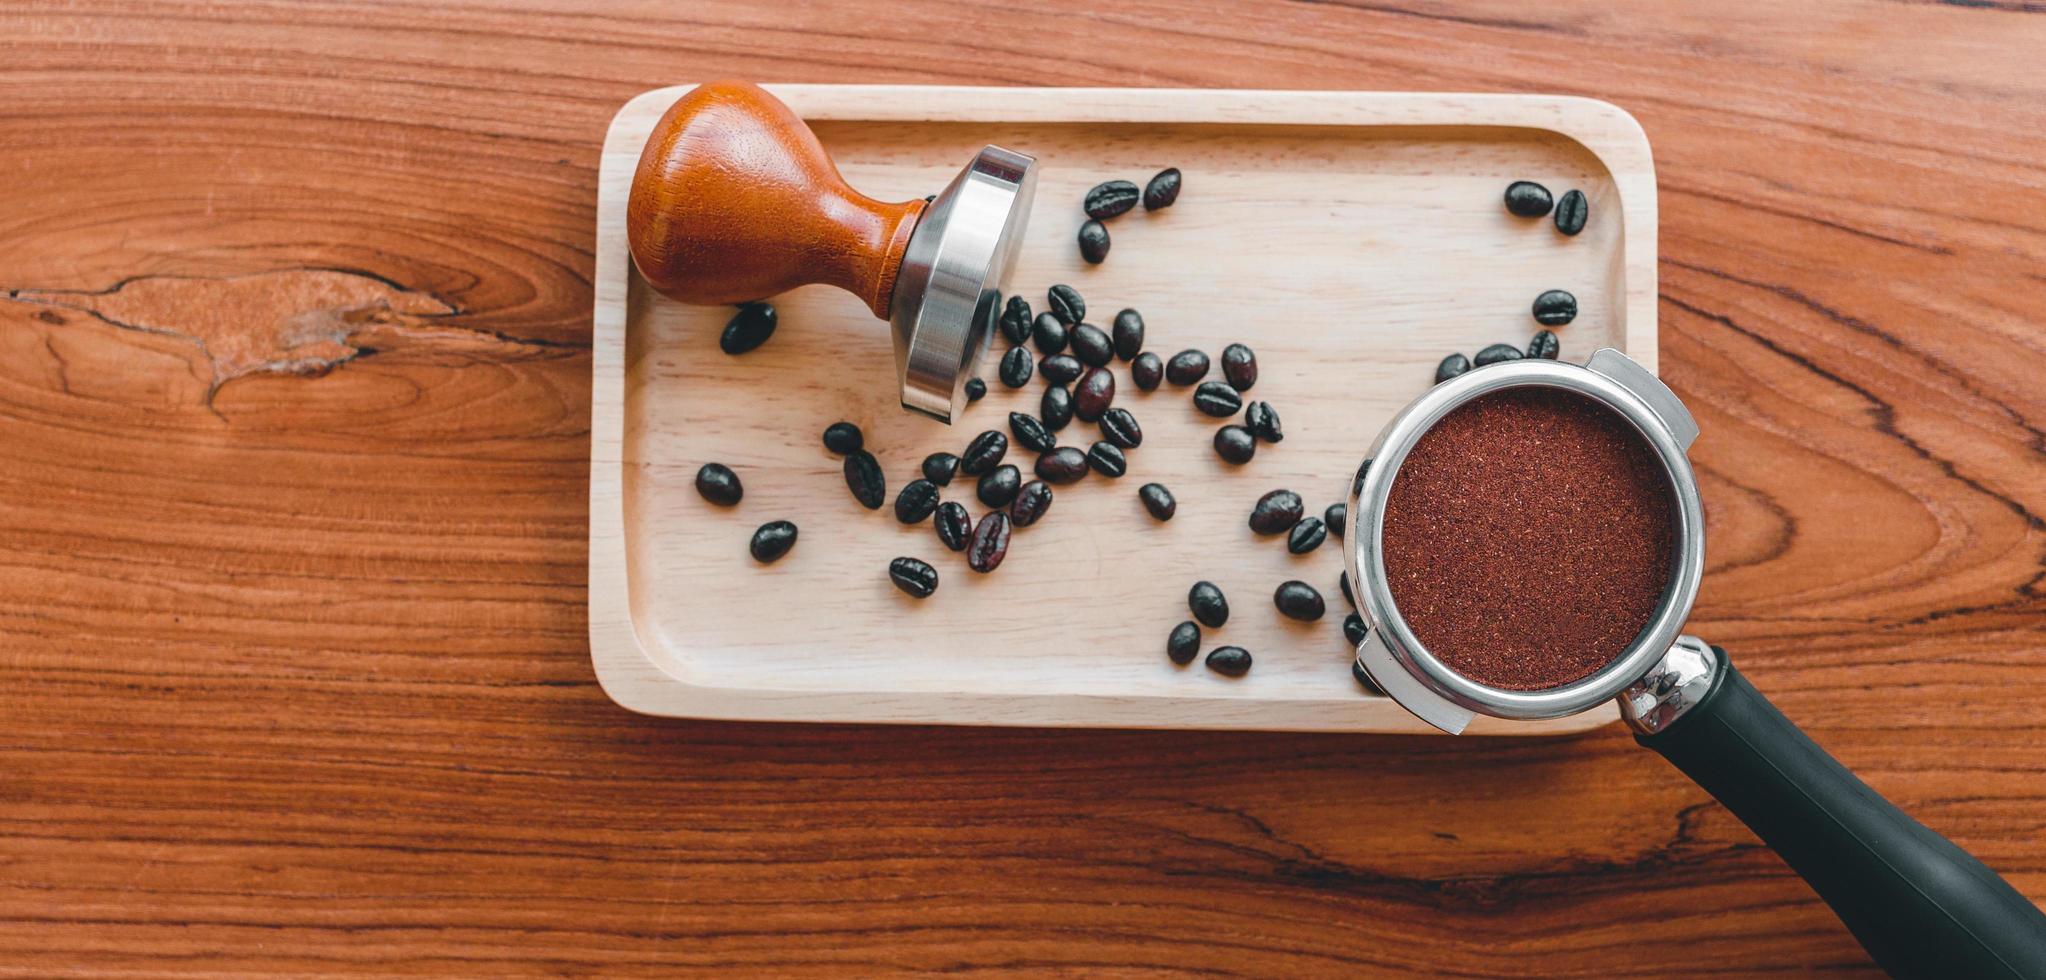 Utrustning av Barista kaffe verktyg manipulera och tempererad kaffe i portafilter rostad kaffe bönor på trä- tabell foto